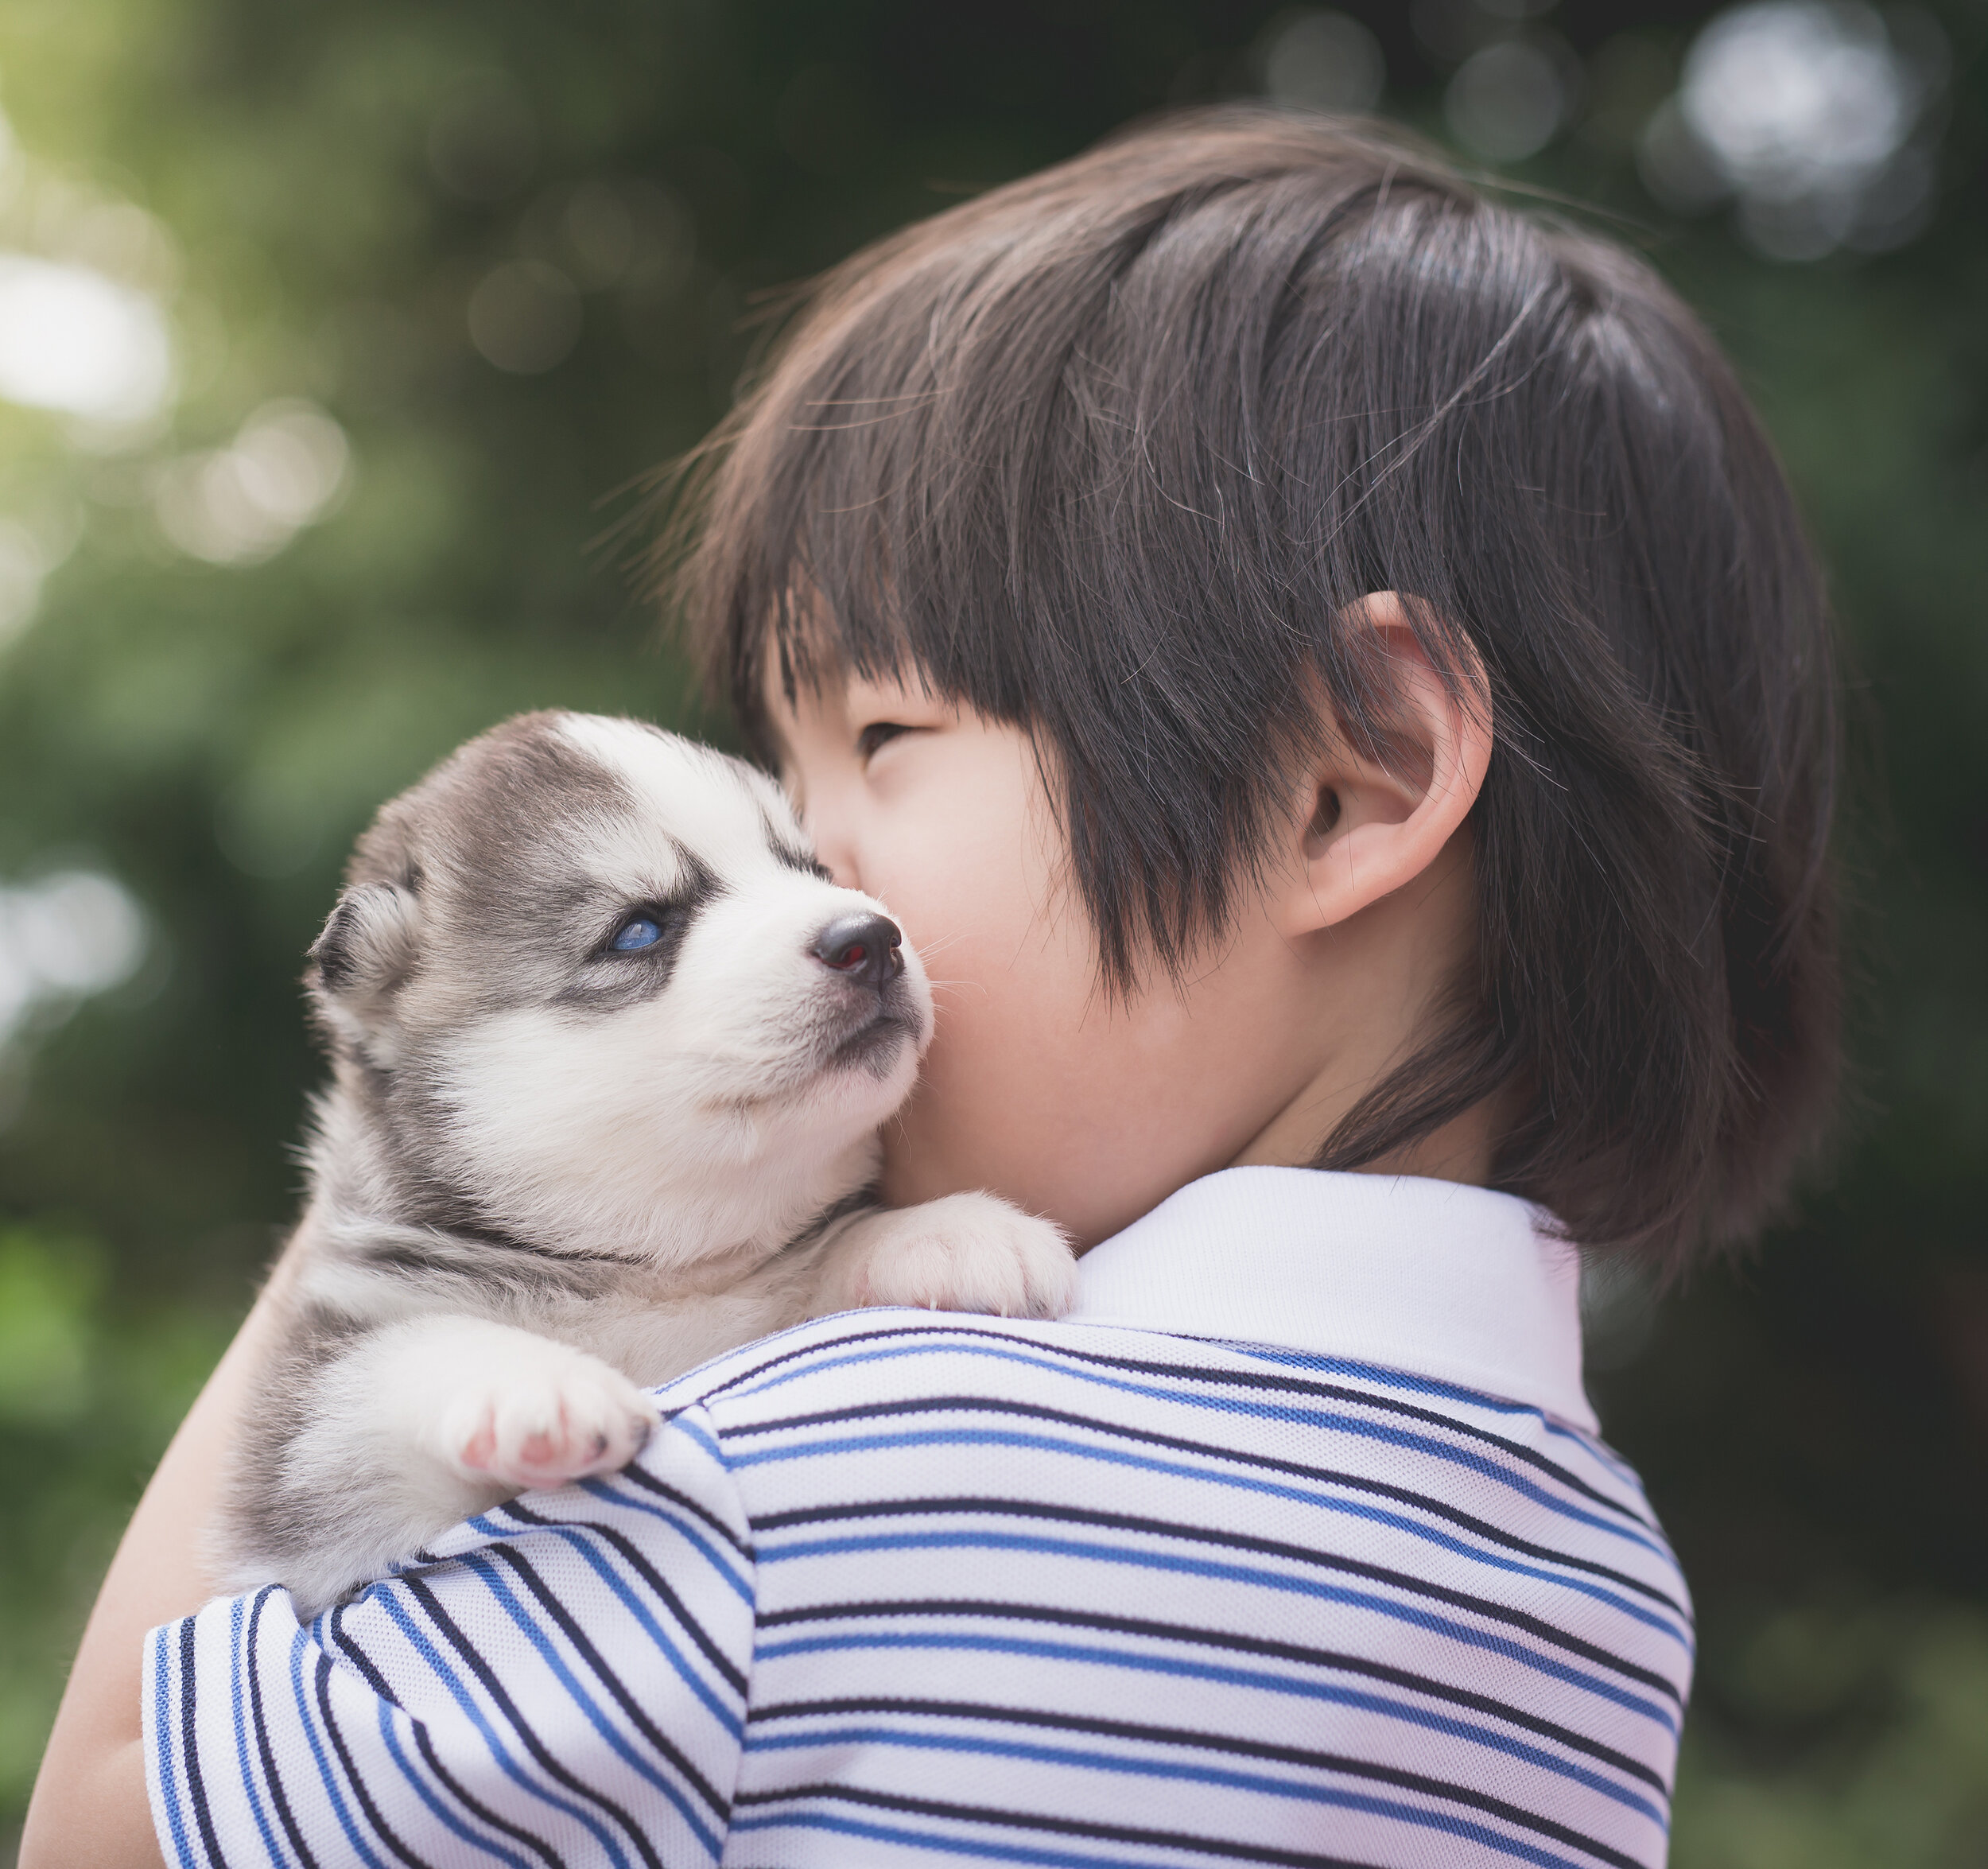 Boy & dog Asian copy.jpg